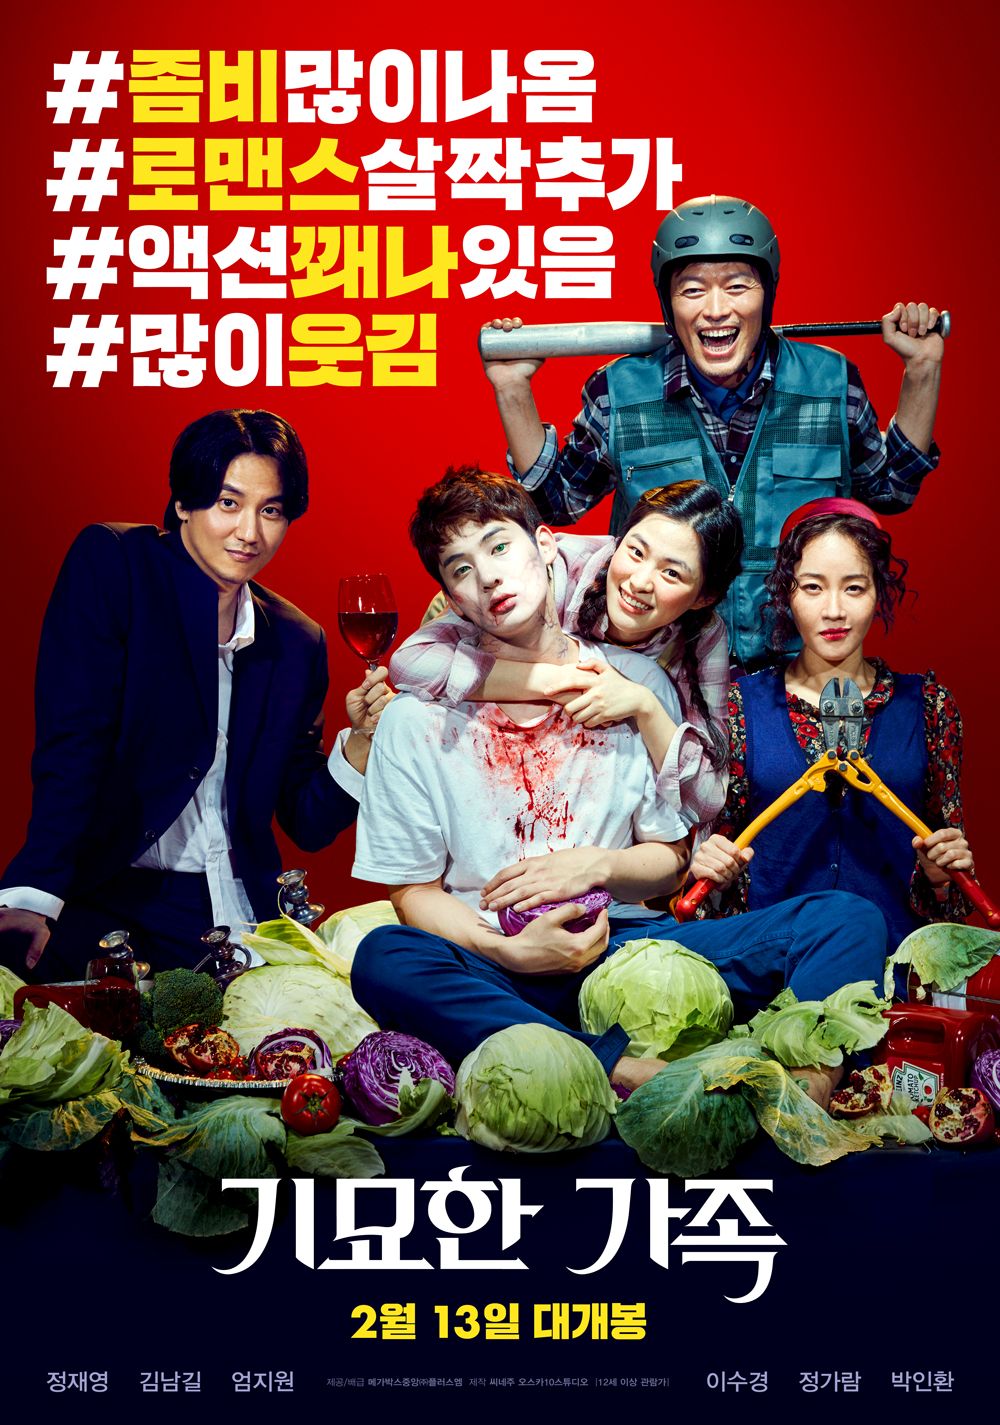 Korean zombie drama